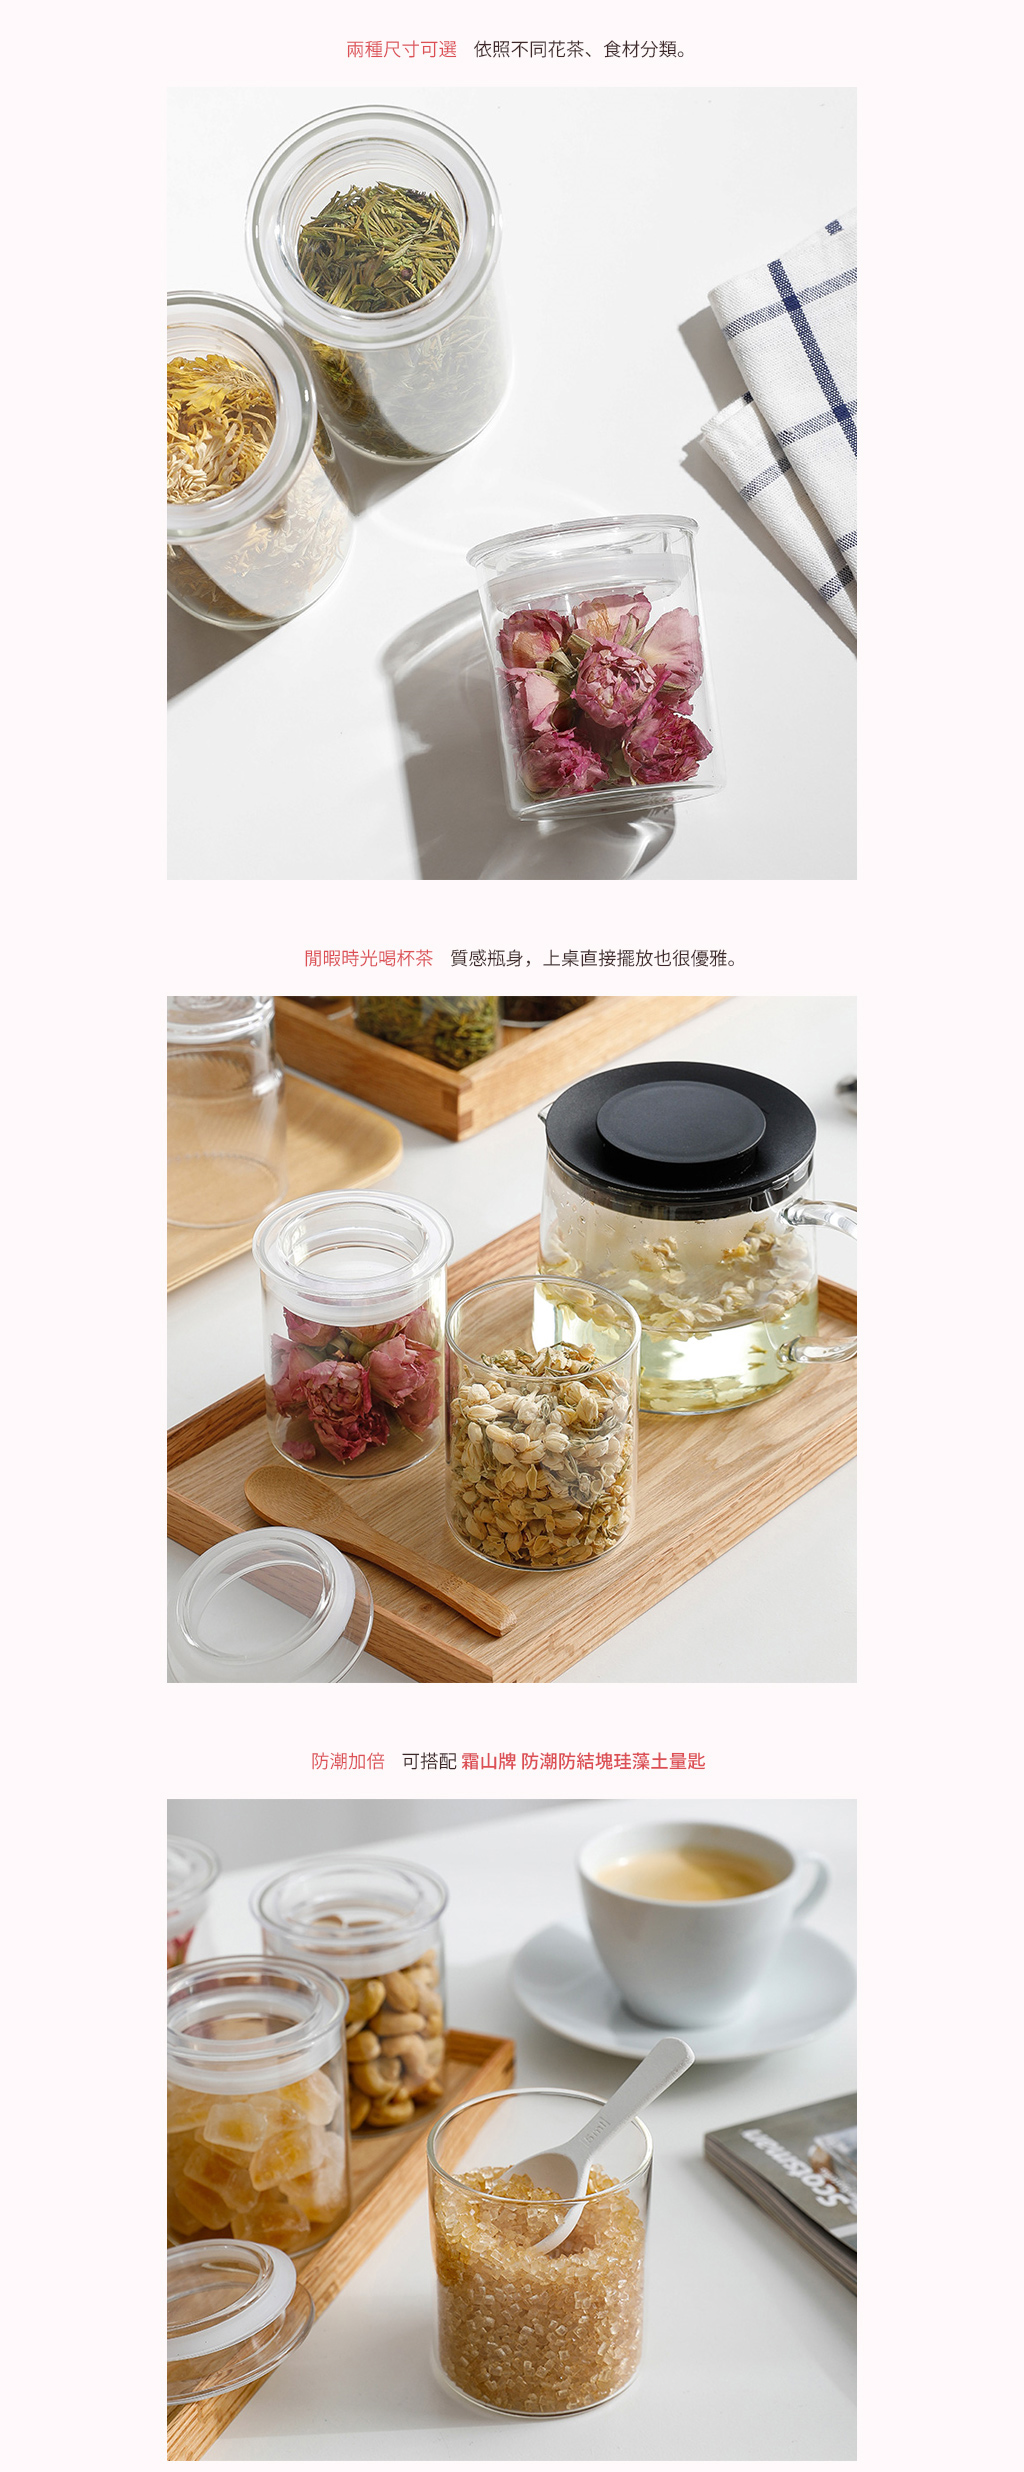 日本霜山 高透防潮玻璃密封式儲物罐200ml (3入) 可放茶葉/乾燥花茶/雜糧/鹽糖